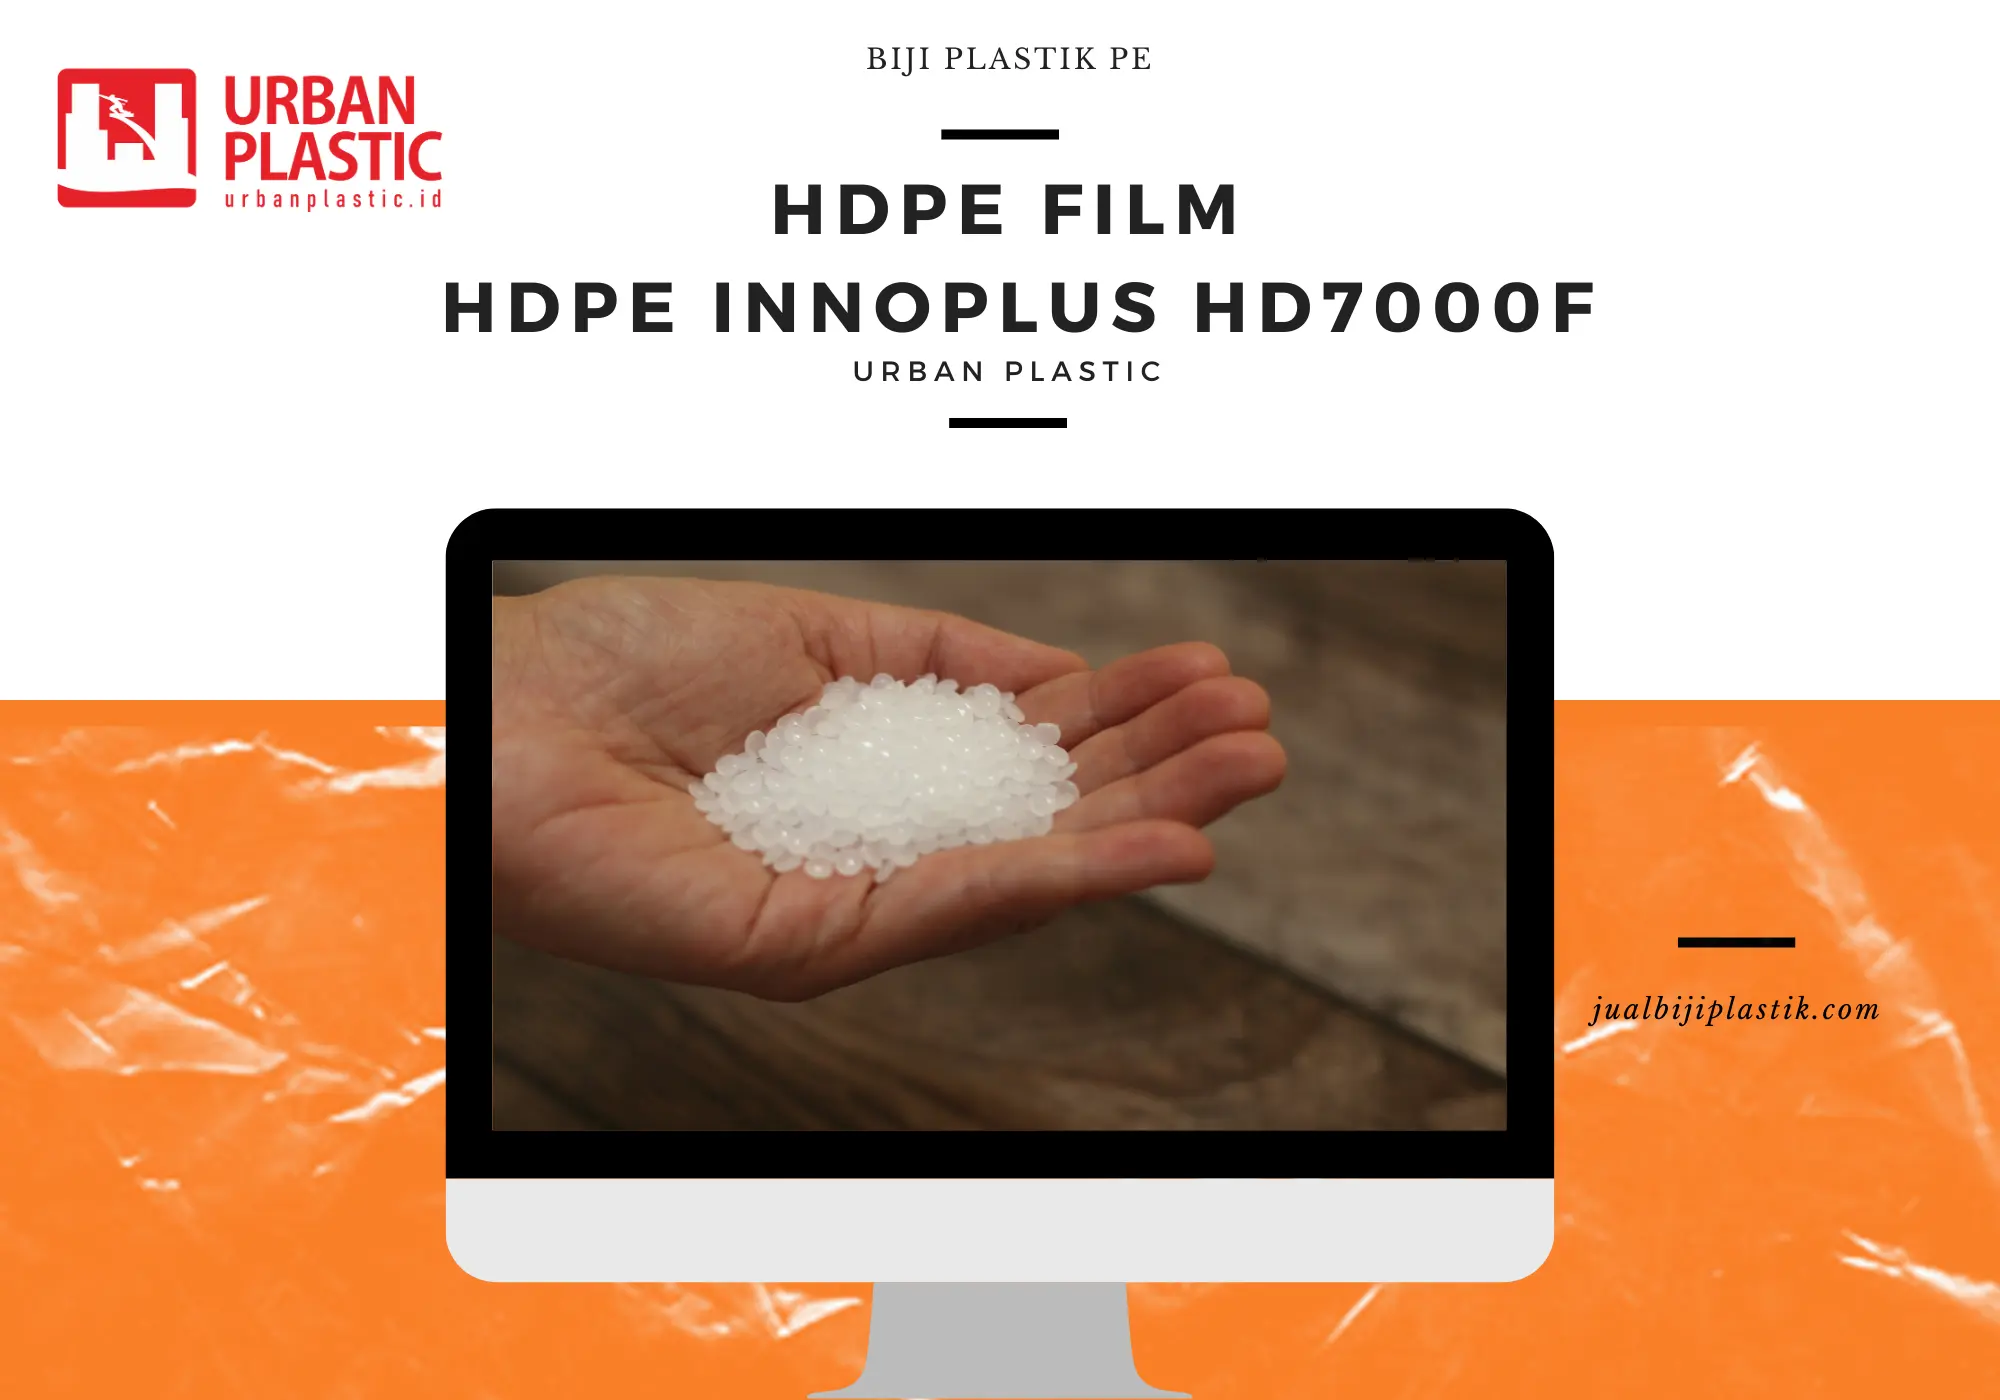 HDPE INNOPLUS HD7000F